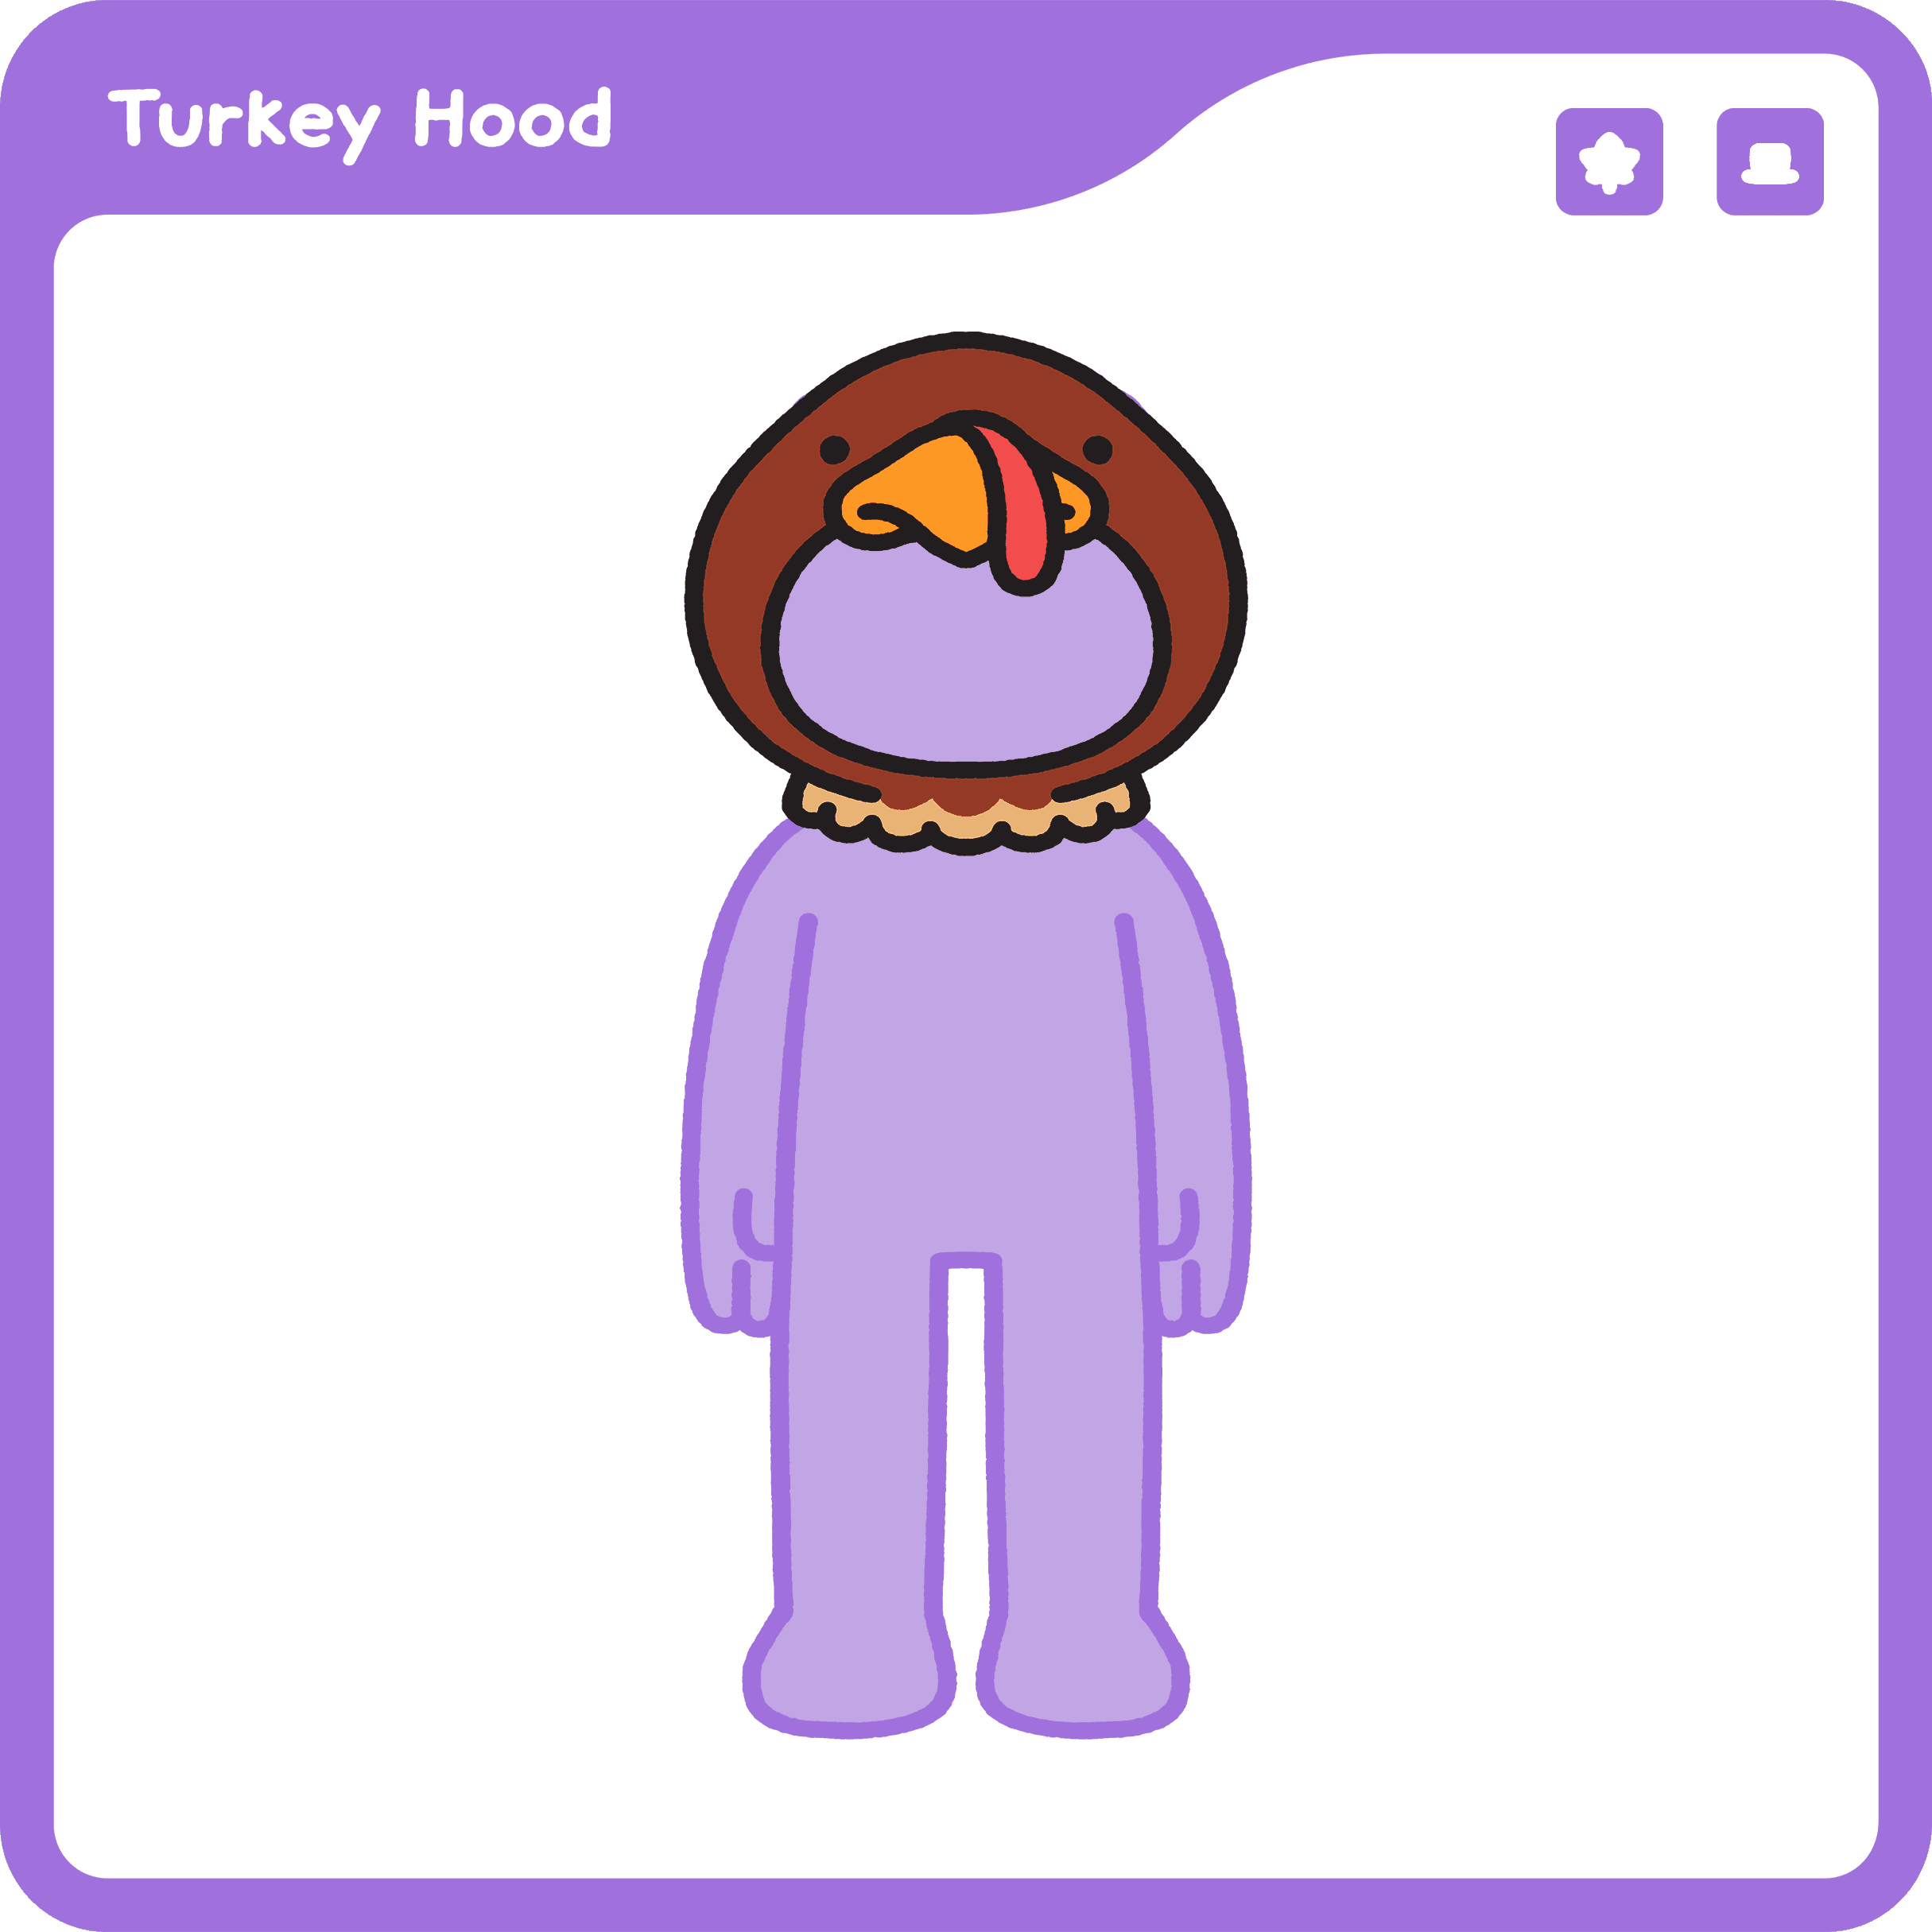 Turkey Hood